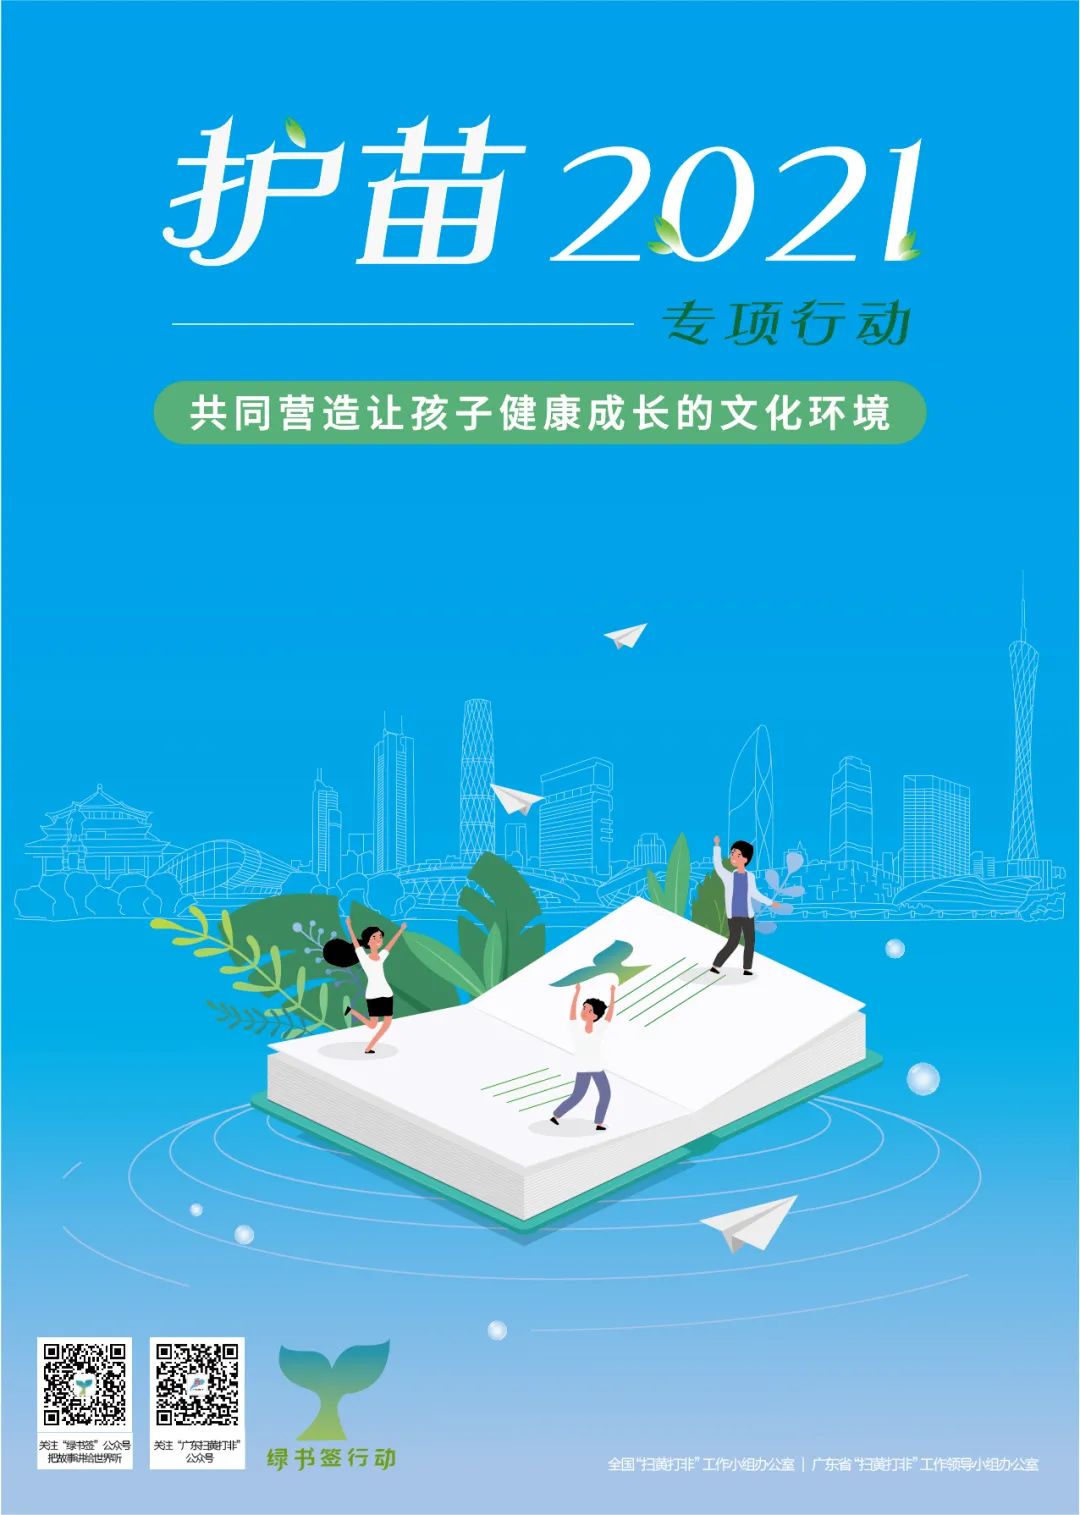 广东省2021年"绿书签行动"宣传海报,书签对外发布